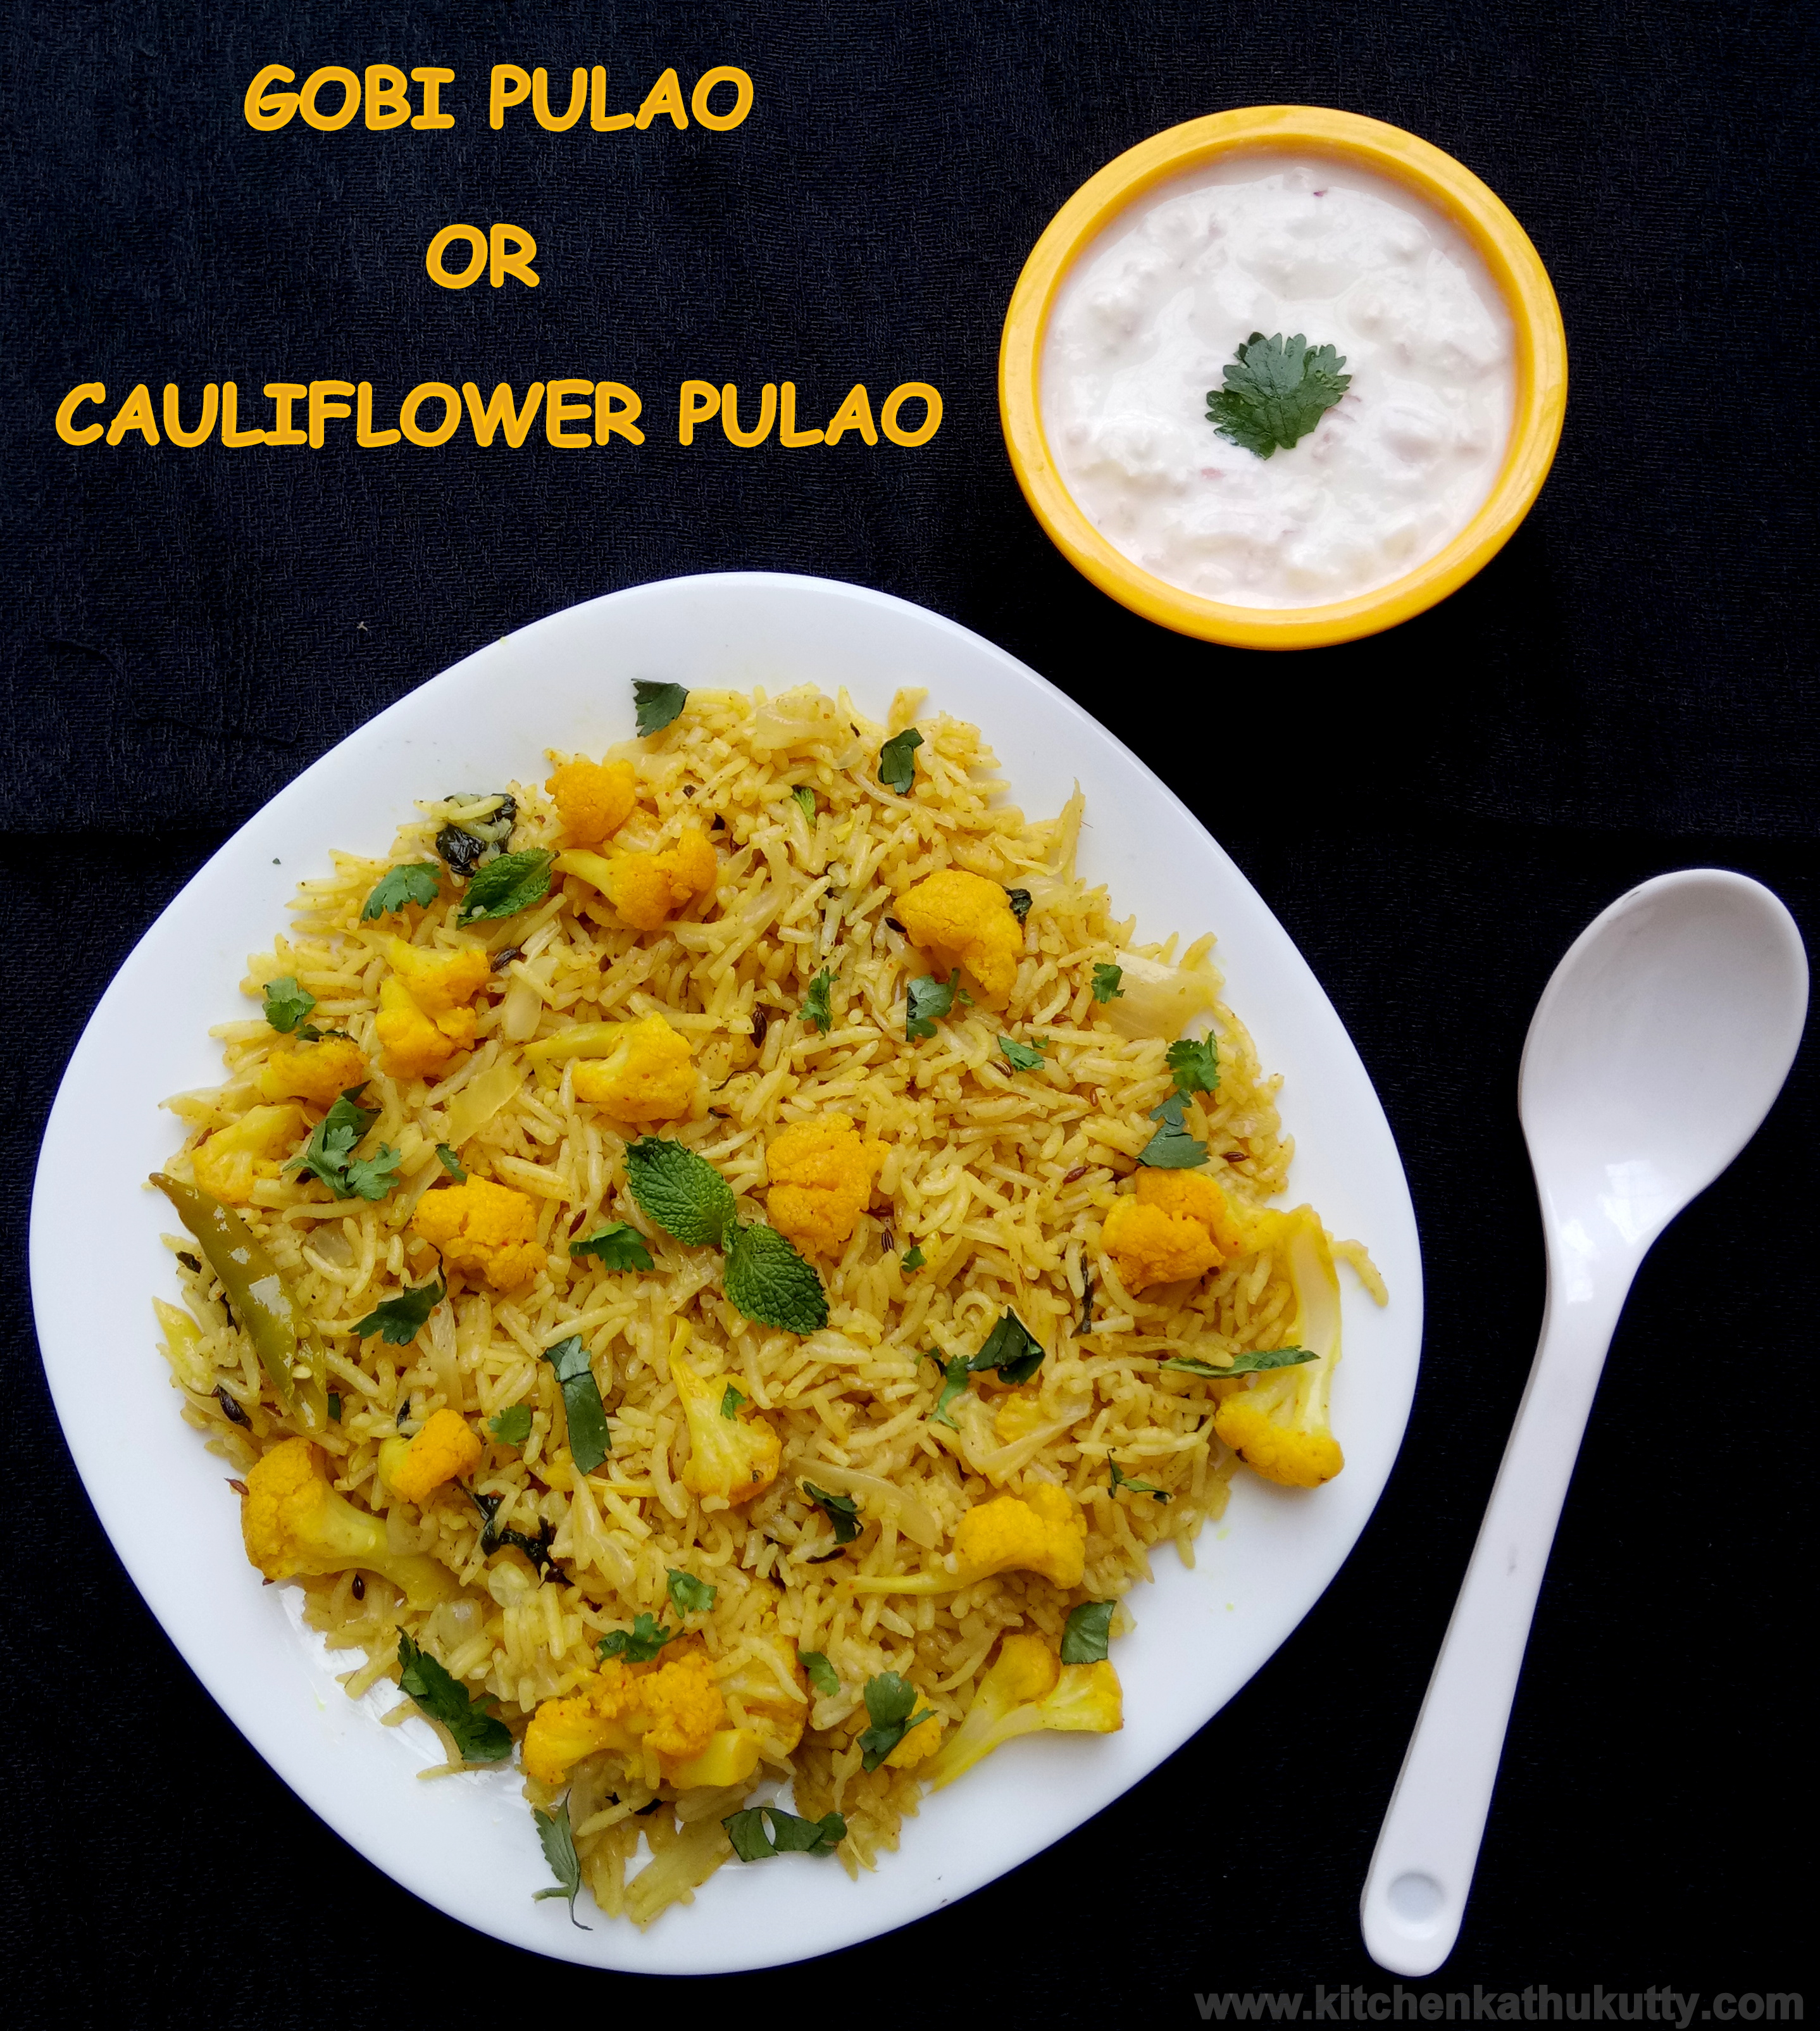 Cauliflower Pulao or Gobi Pulao